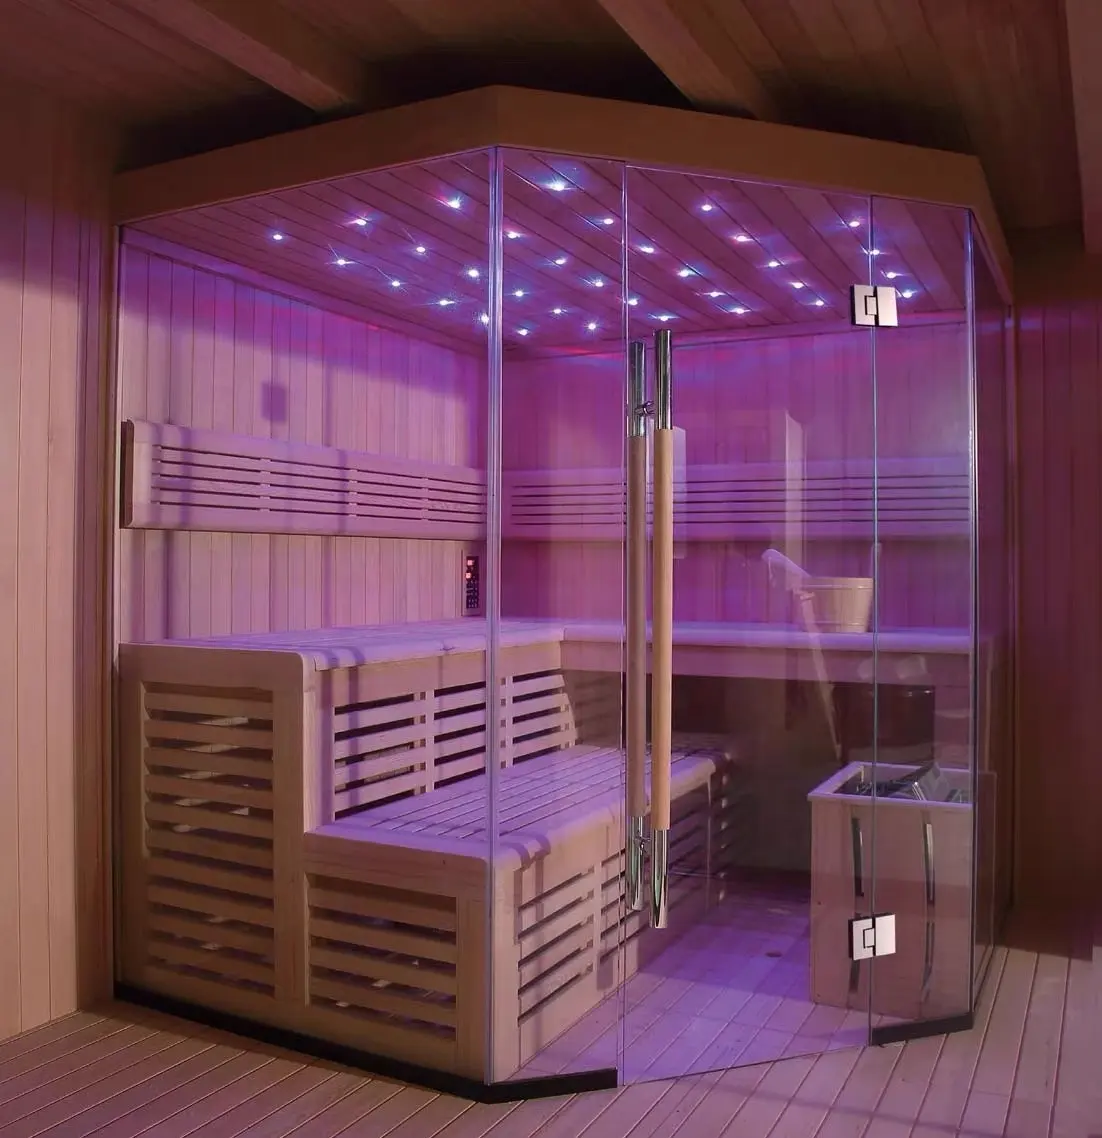 Pabrik Foshan ruang kompor tradisional dengan Hemlock kayu barel Infra merah panel pemanas kubus taman ruang Sauna